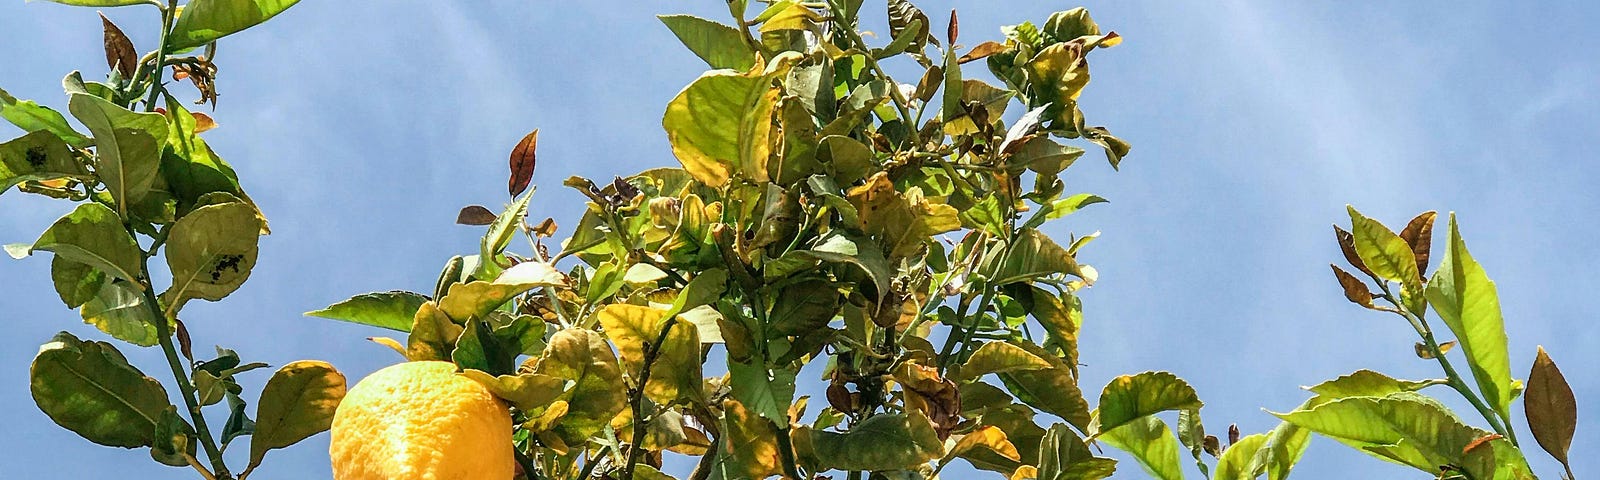 Photo of Lemon Tree, by Santiago Manuel De la Colina (Pexels): https://rb.gy/4zqi68